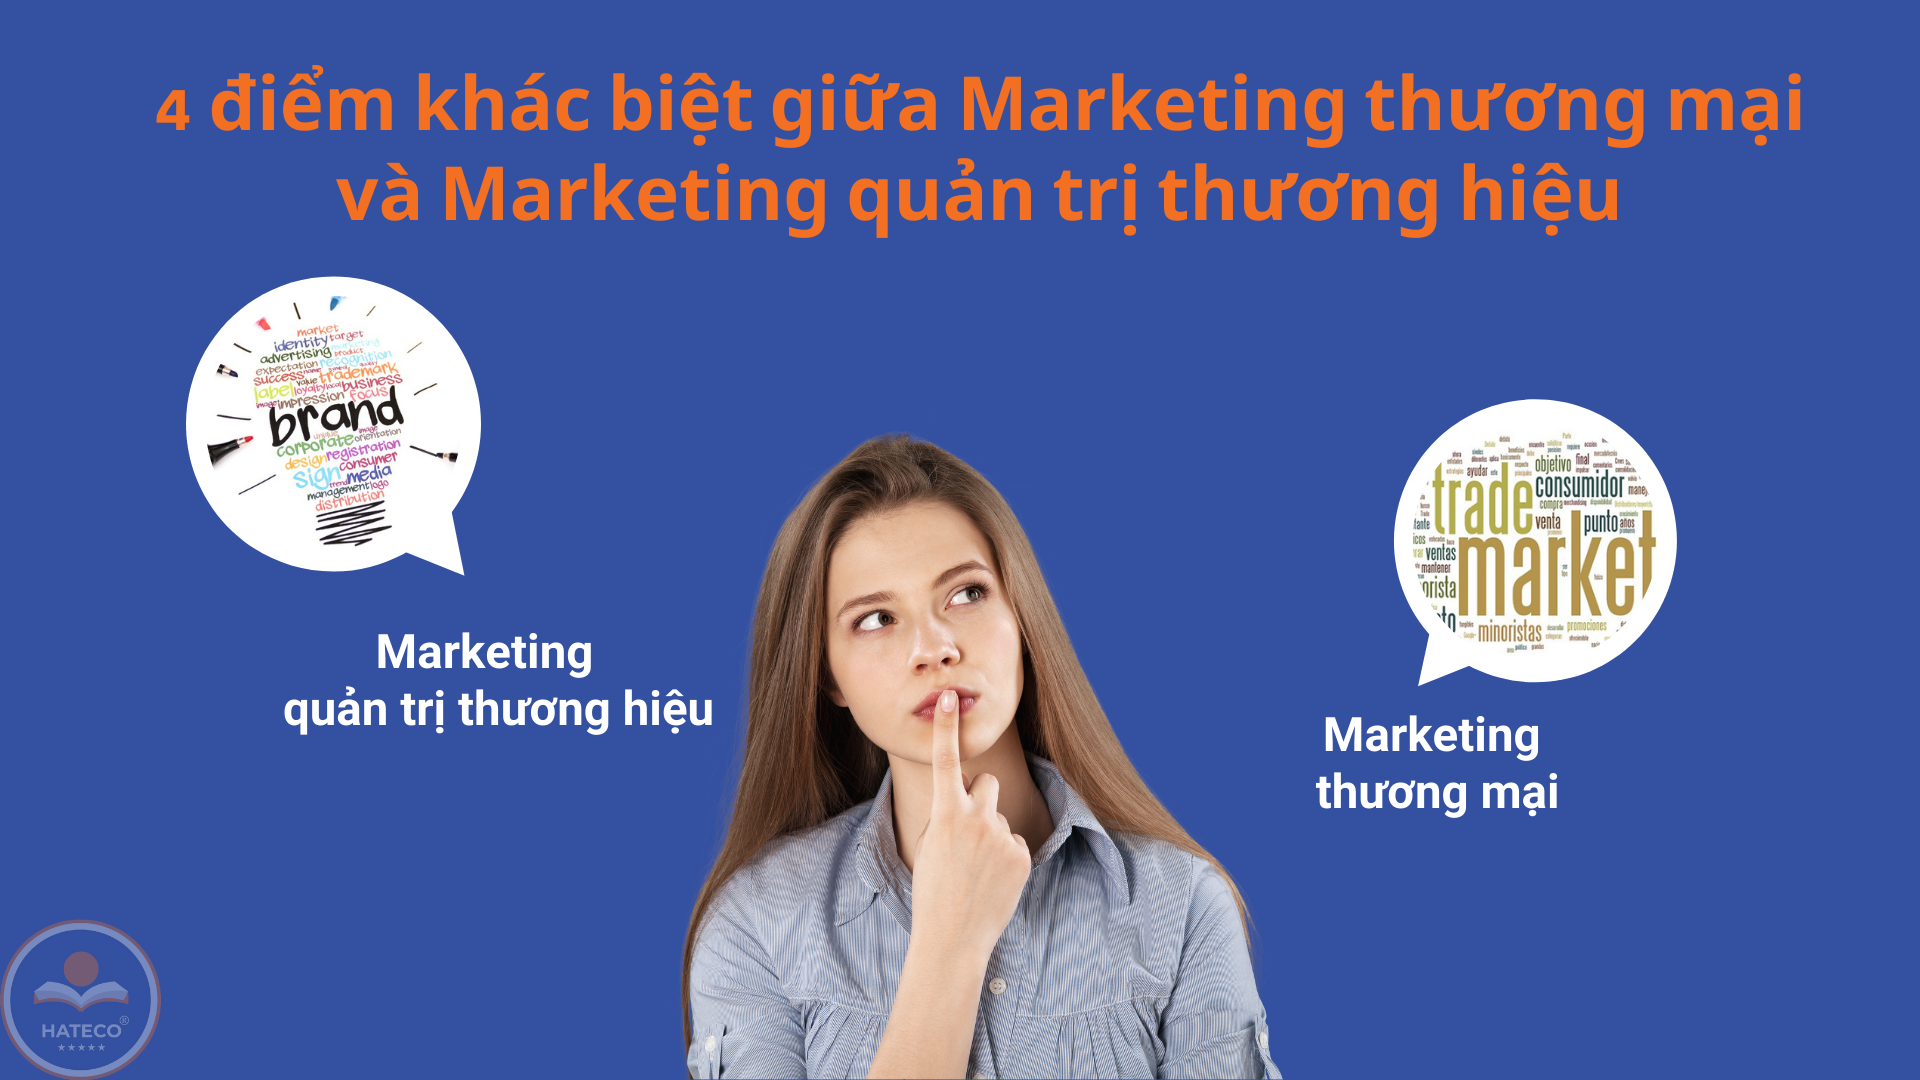 Marketing thương mại hay quản trị thương hiệu